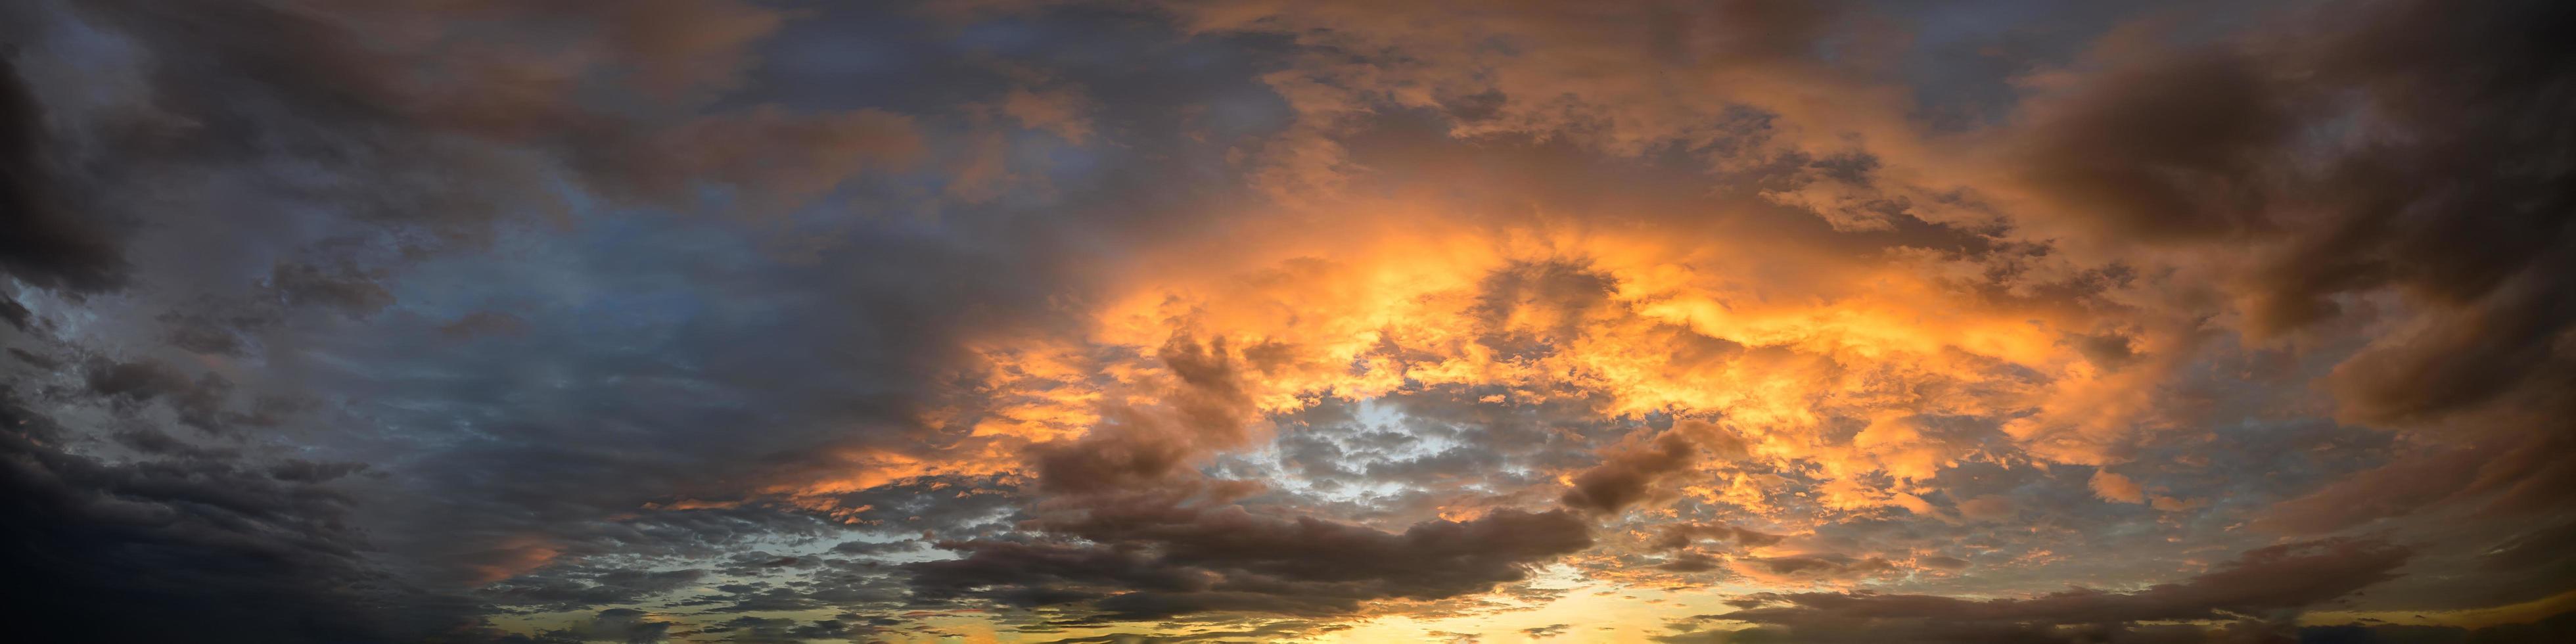 cielo e nuvole al tramonto foto